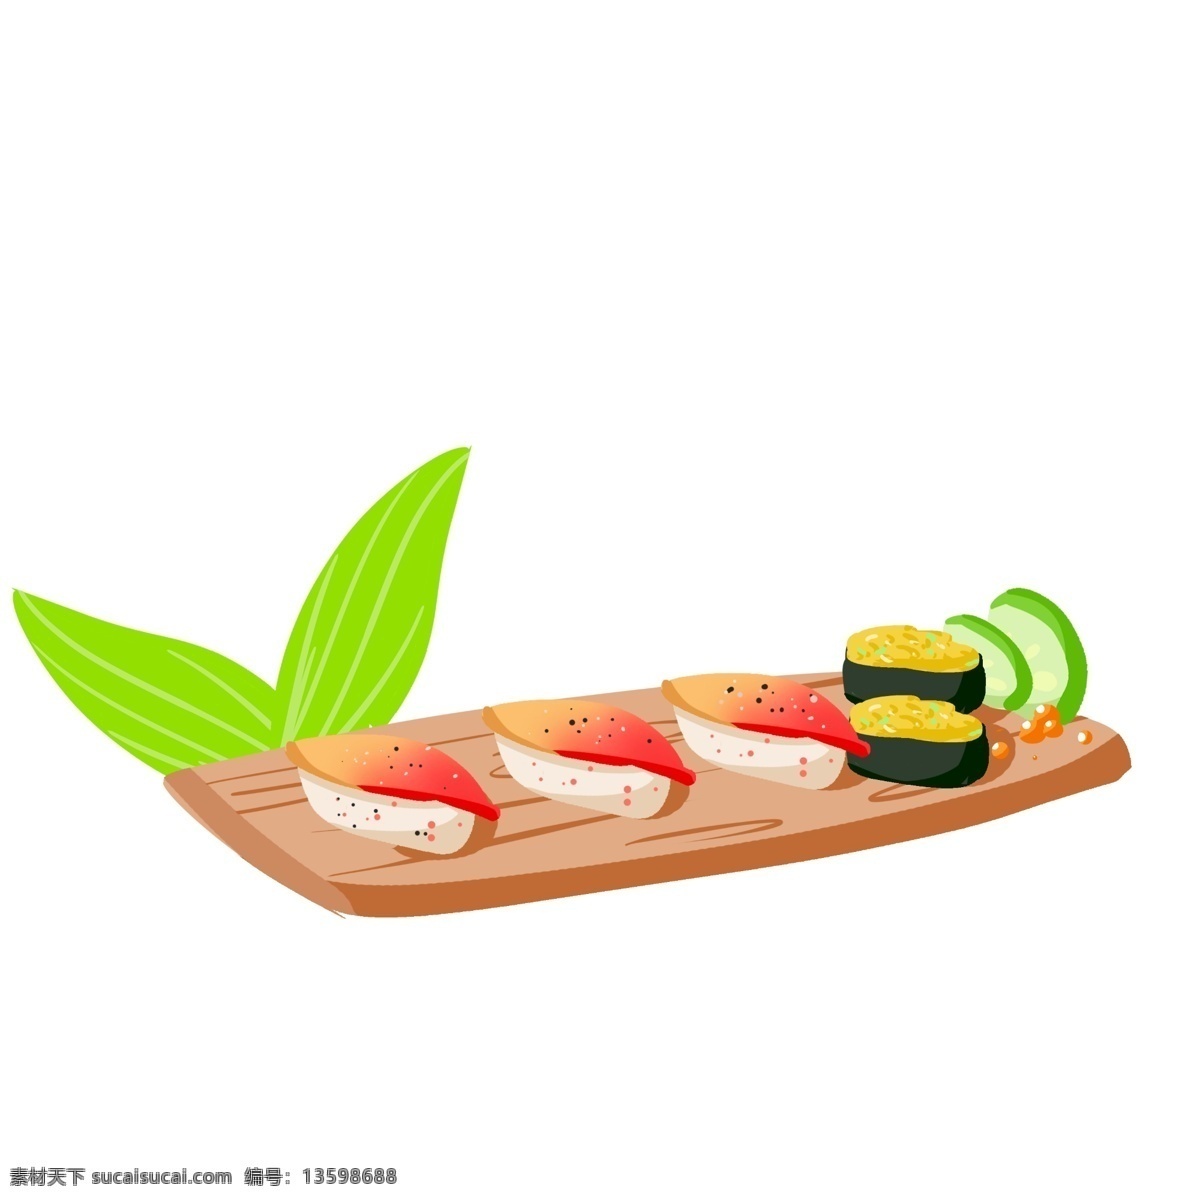 美味 西式 寿司 手绘 插画 西餐 野餐 面包 牛肉 牛排 食物 简笔画 卡通 美食 食品 米饭